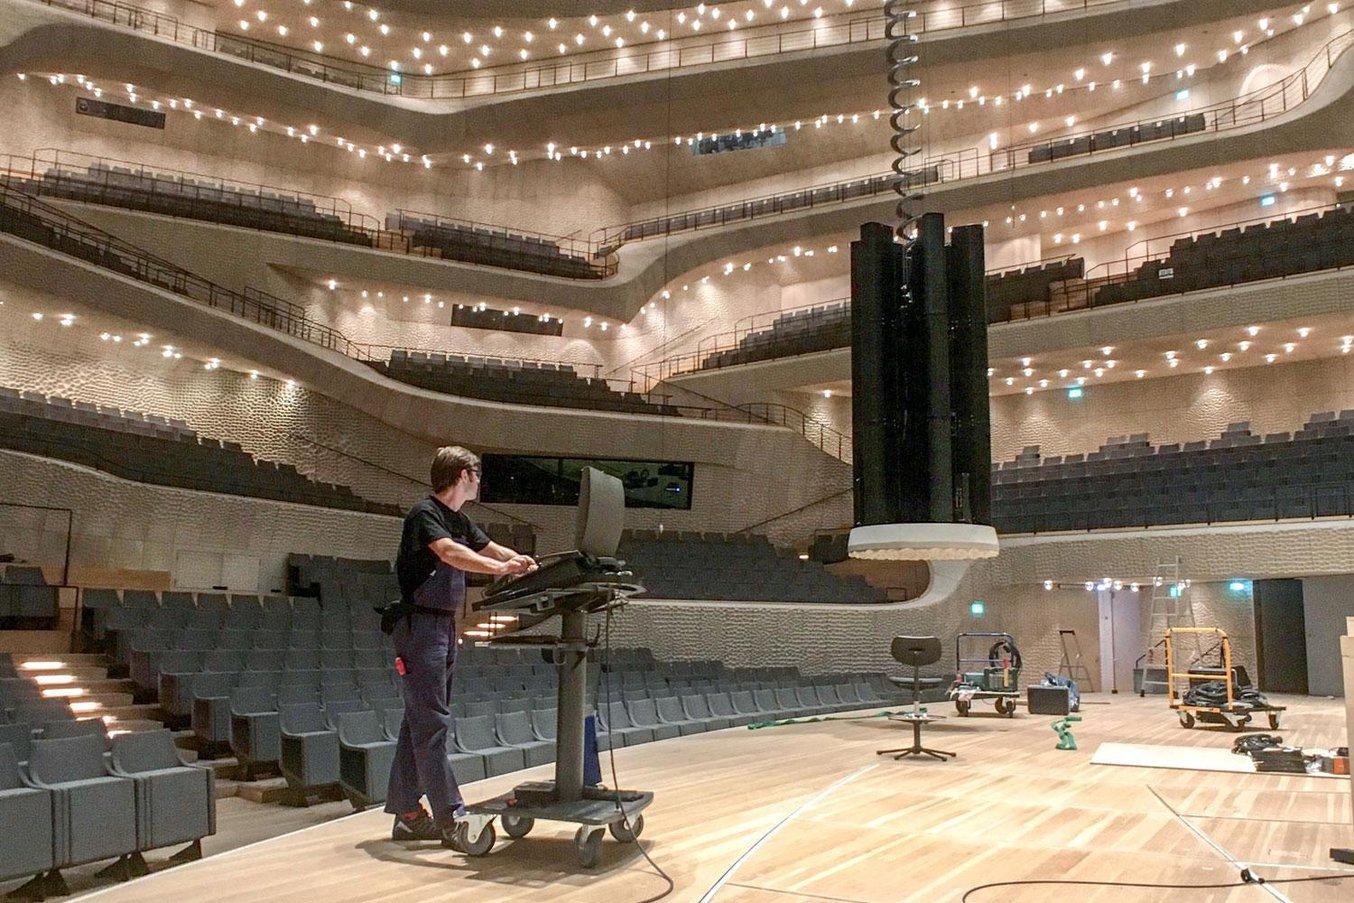 Il gruppo di altoparlanti VIDA L Kling & Freitag, appeso al soffitto della Grand Concert Hall della Elbphilharmonie, offre all'intera sala un'esperienza sonora eccezionale.